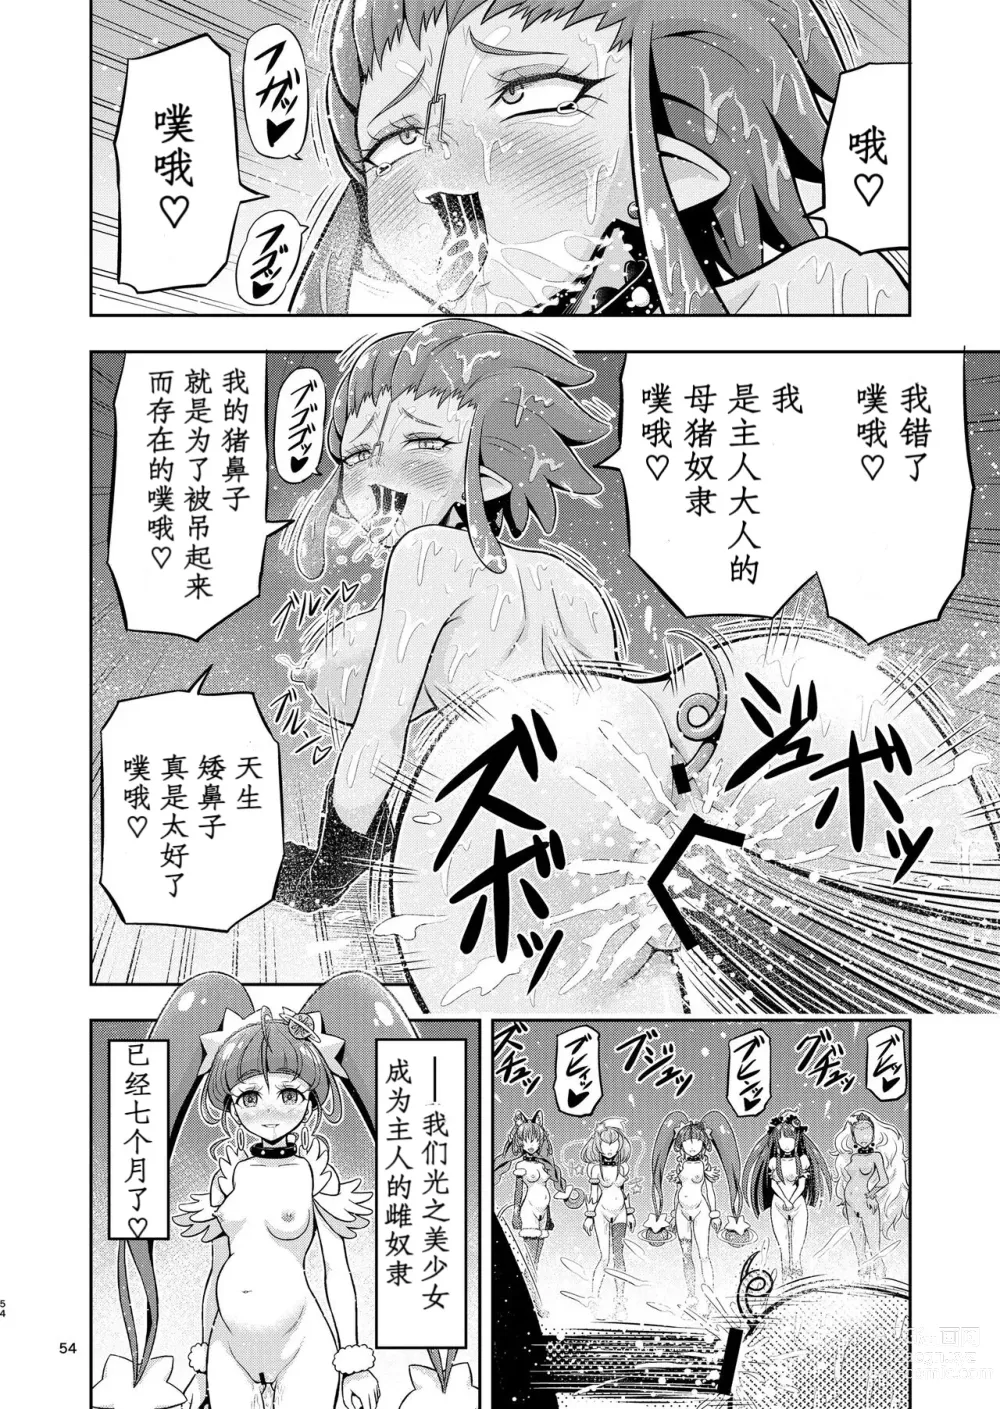 Page 4 of doujinshi Hoshi Asobi 2